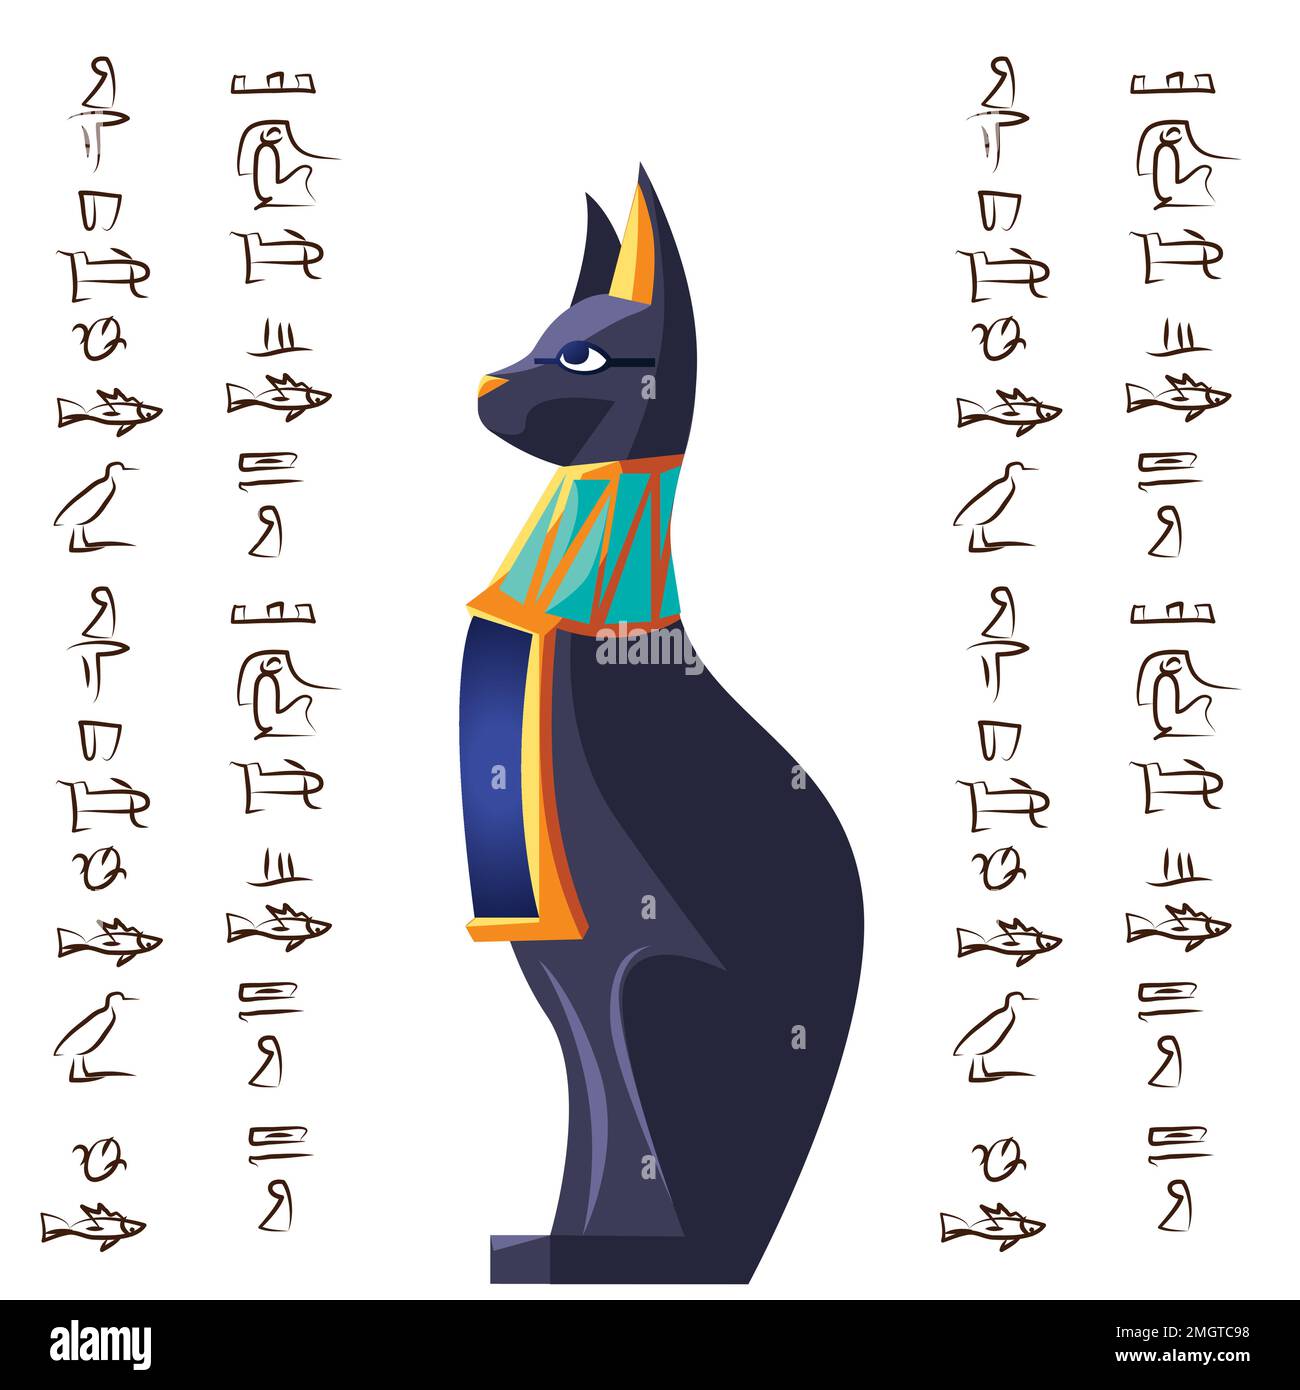 Illustration de dessin animé vecteur de chat de la déesse de l'Égypte antique. Symbole de la culture égyptienne, statue noire de la déesse Bastet, animal sacré isolé sur fond blanc avec signes hiéroglyphes Illustration de Vecteur